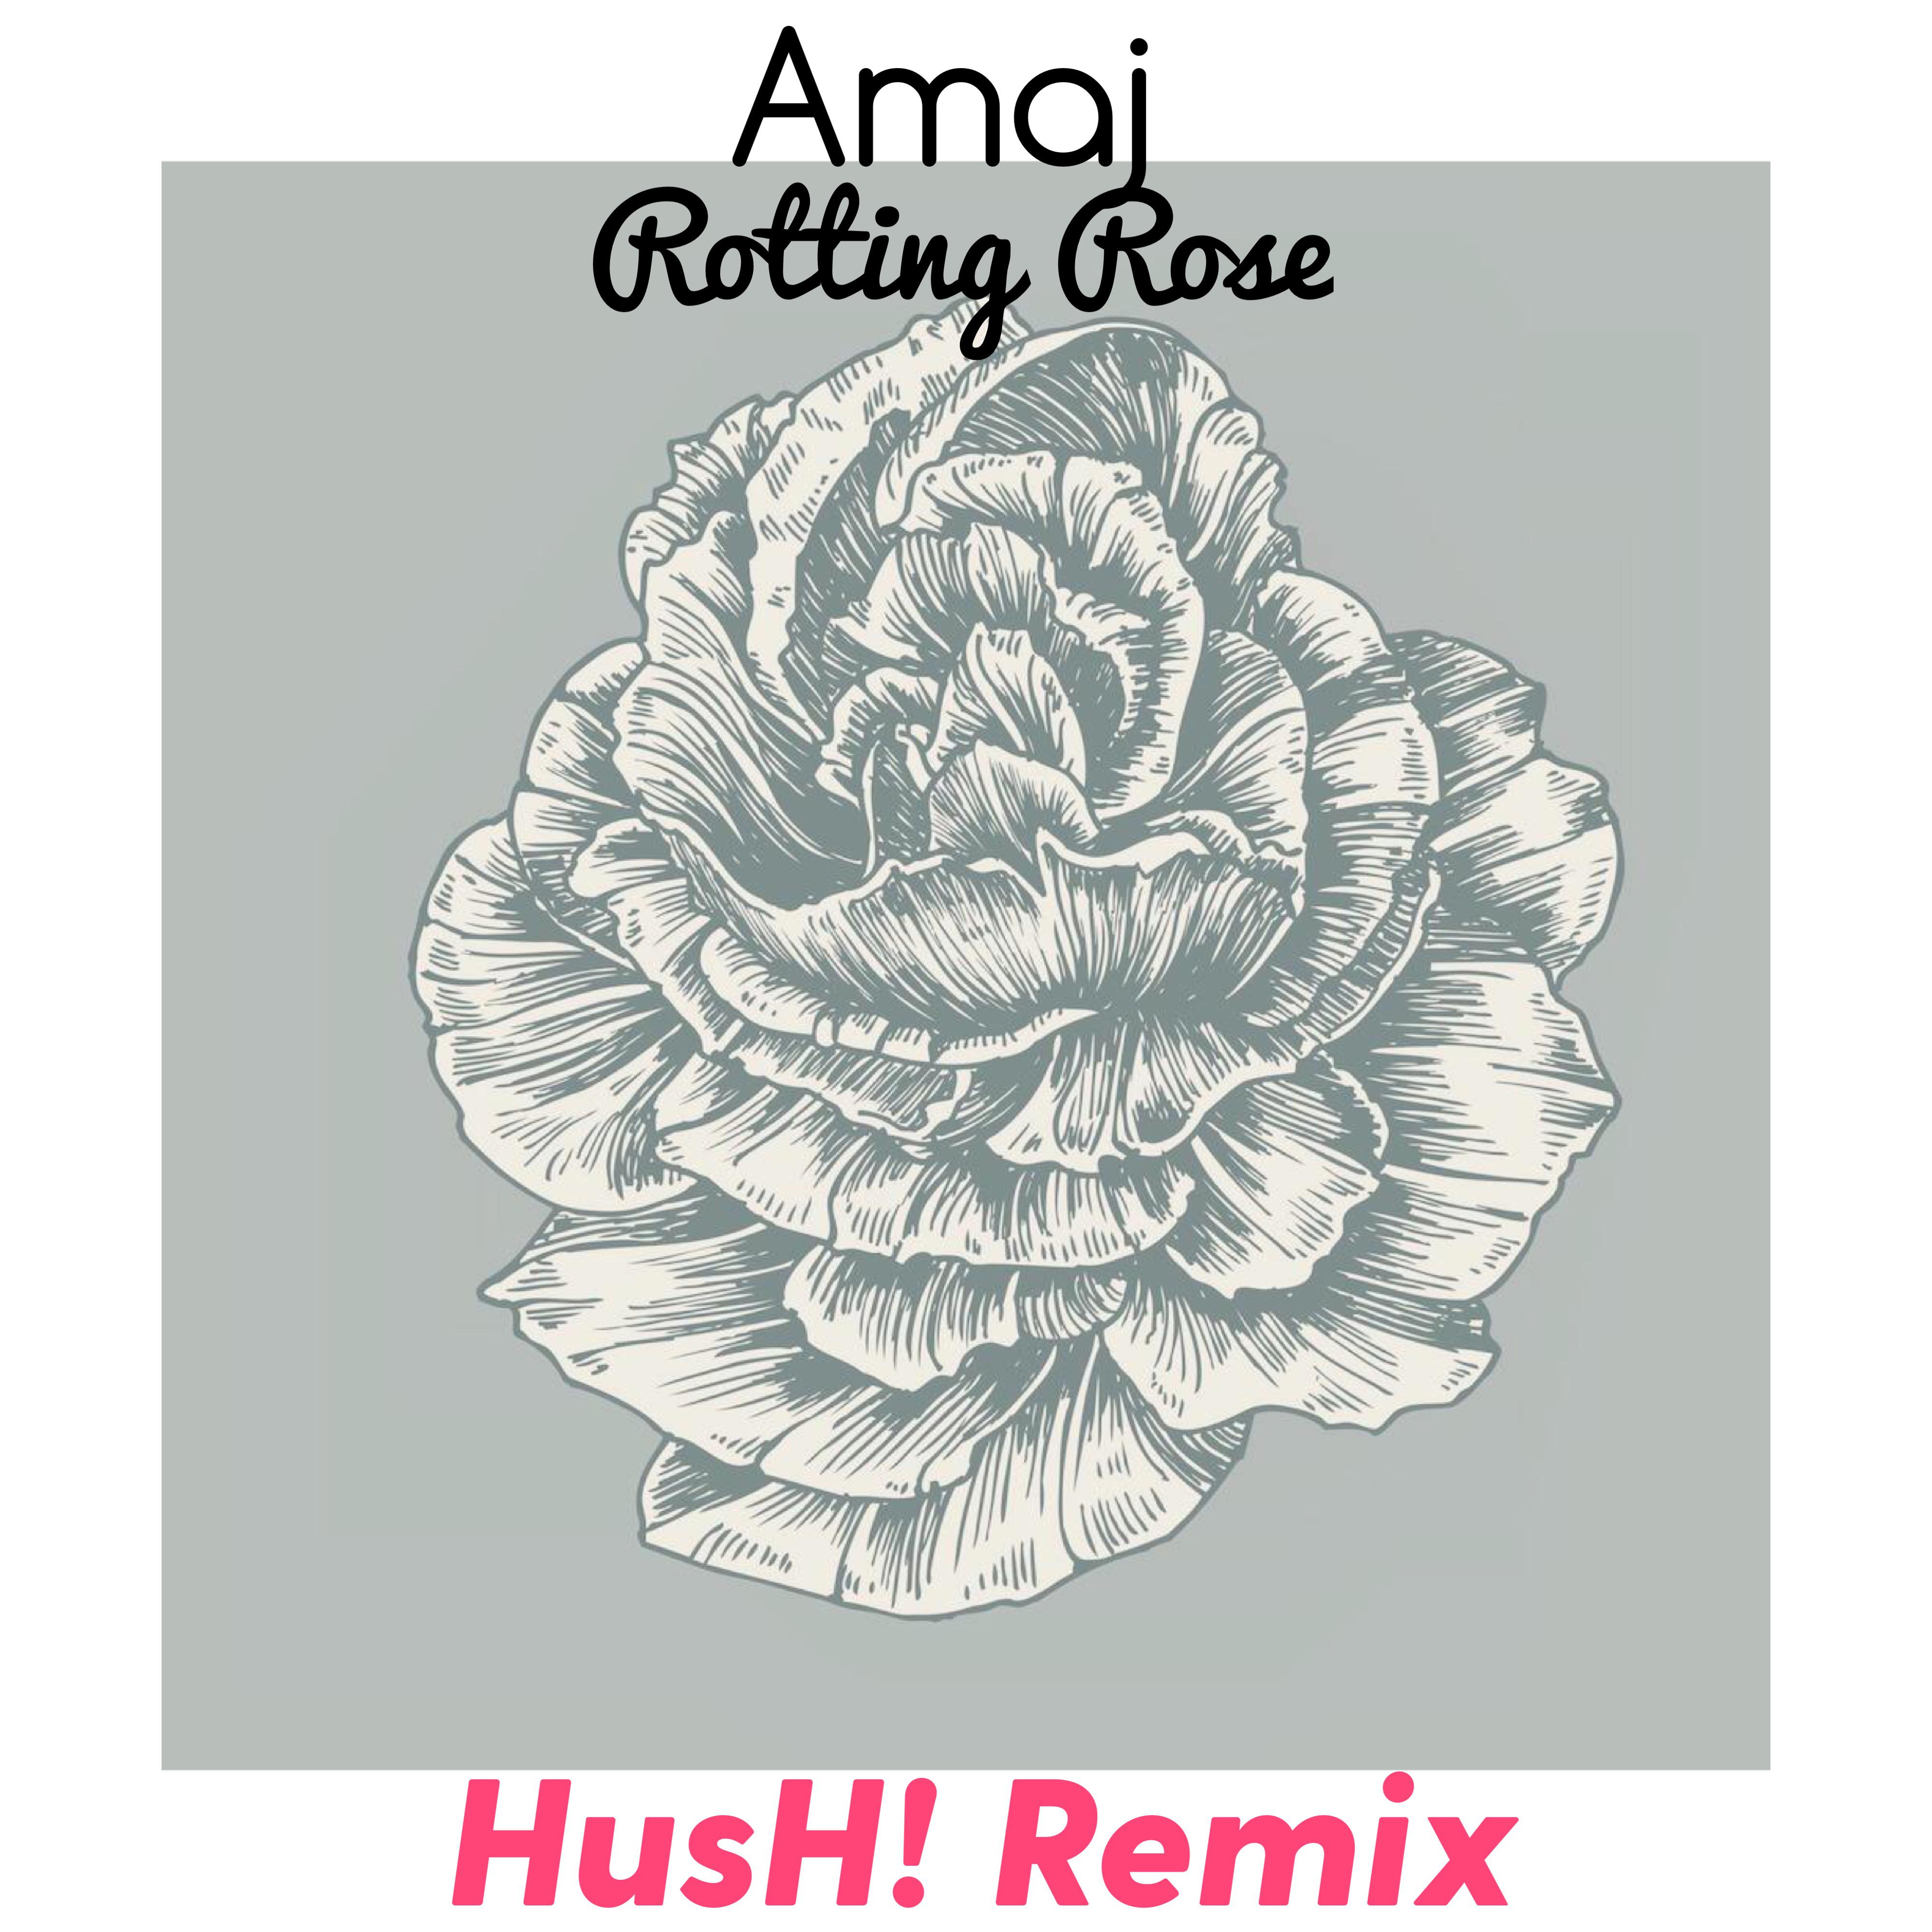 Rotting Rose(HusH! Remix)专辑